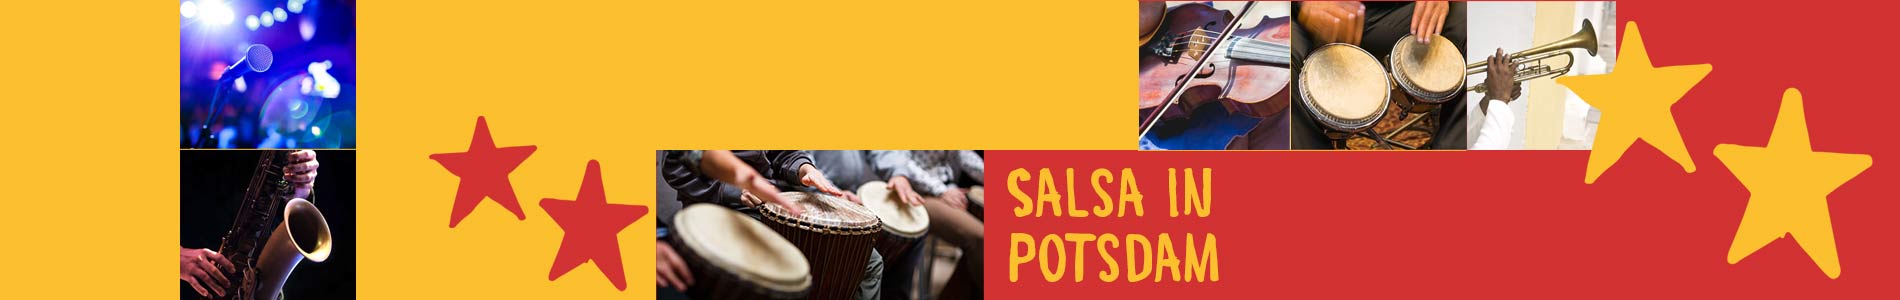 Salsa in Potsdam – Salsa lernen und tanzen, Tanzkurse, Partys, Veranstaltungen